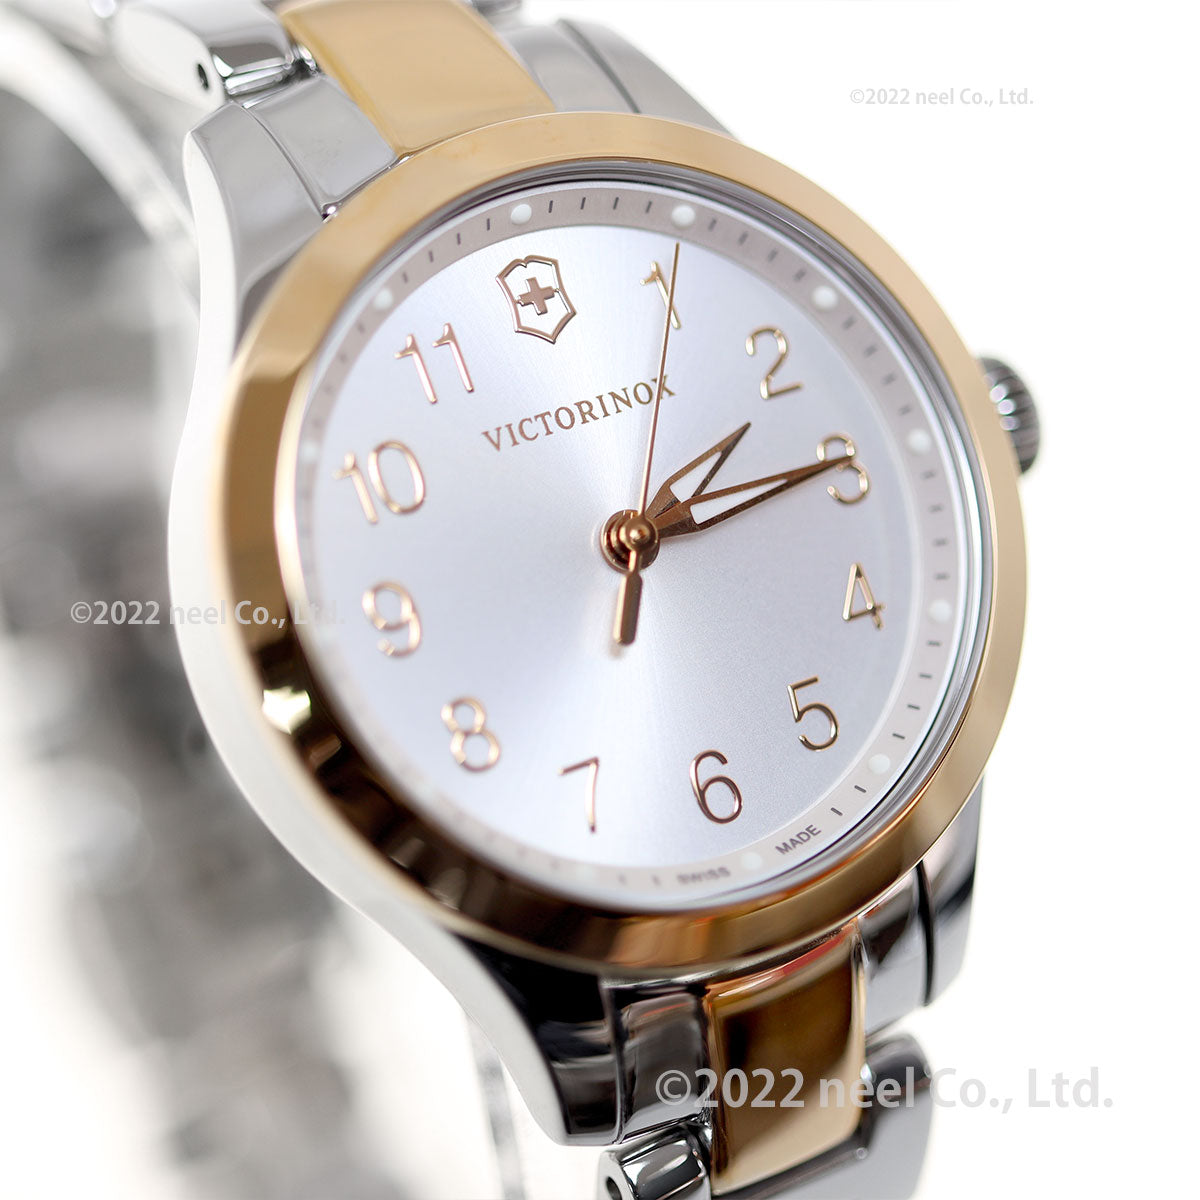 ビクトリノックス 時計 レディース アライアンス VICTORINOX 腕時計 Alliance XS 241842